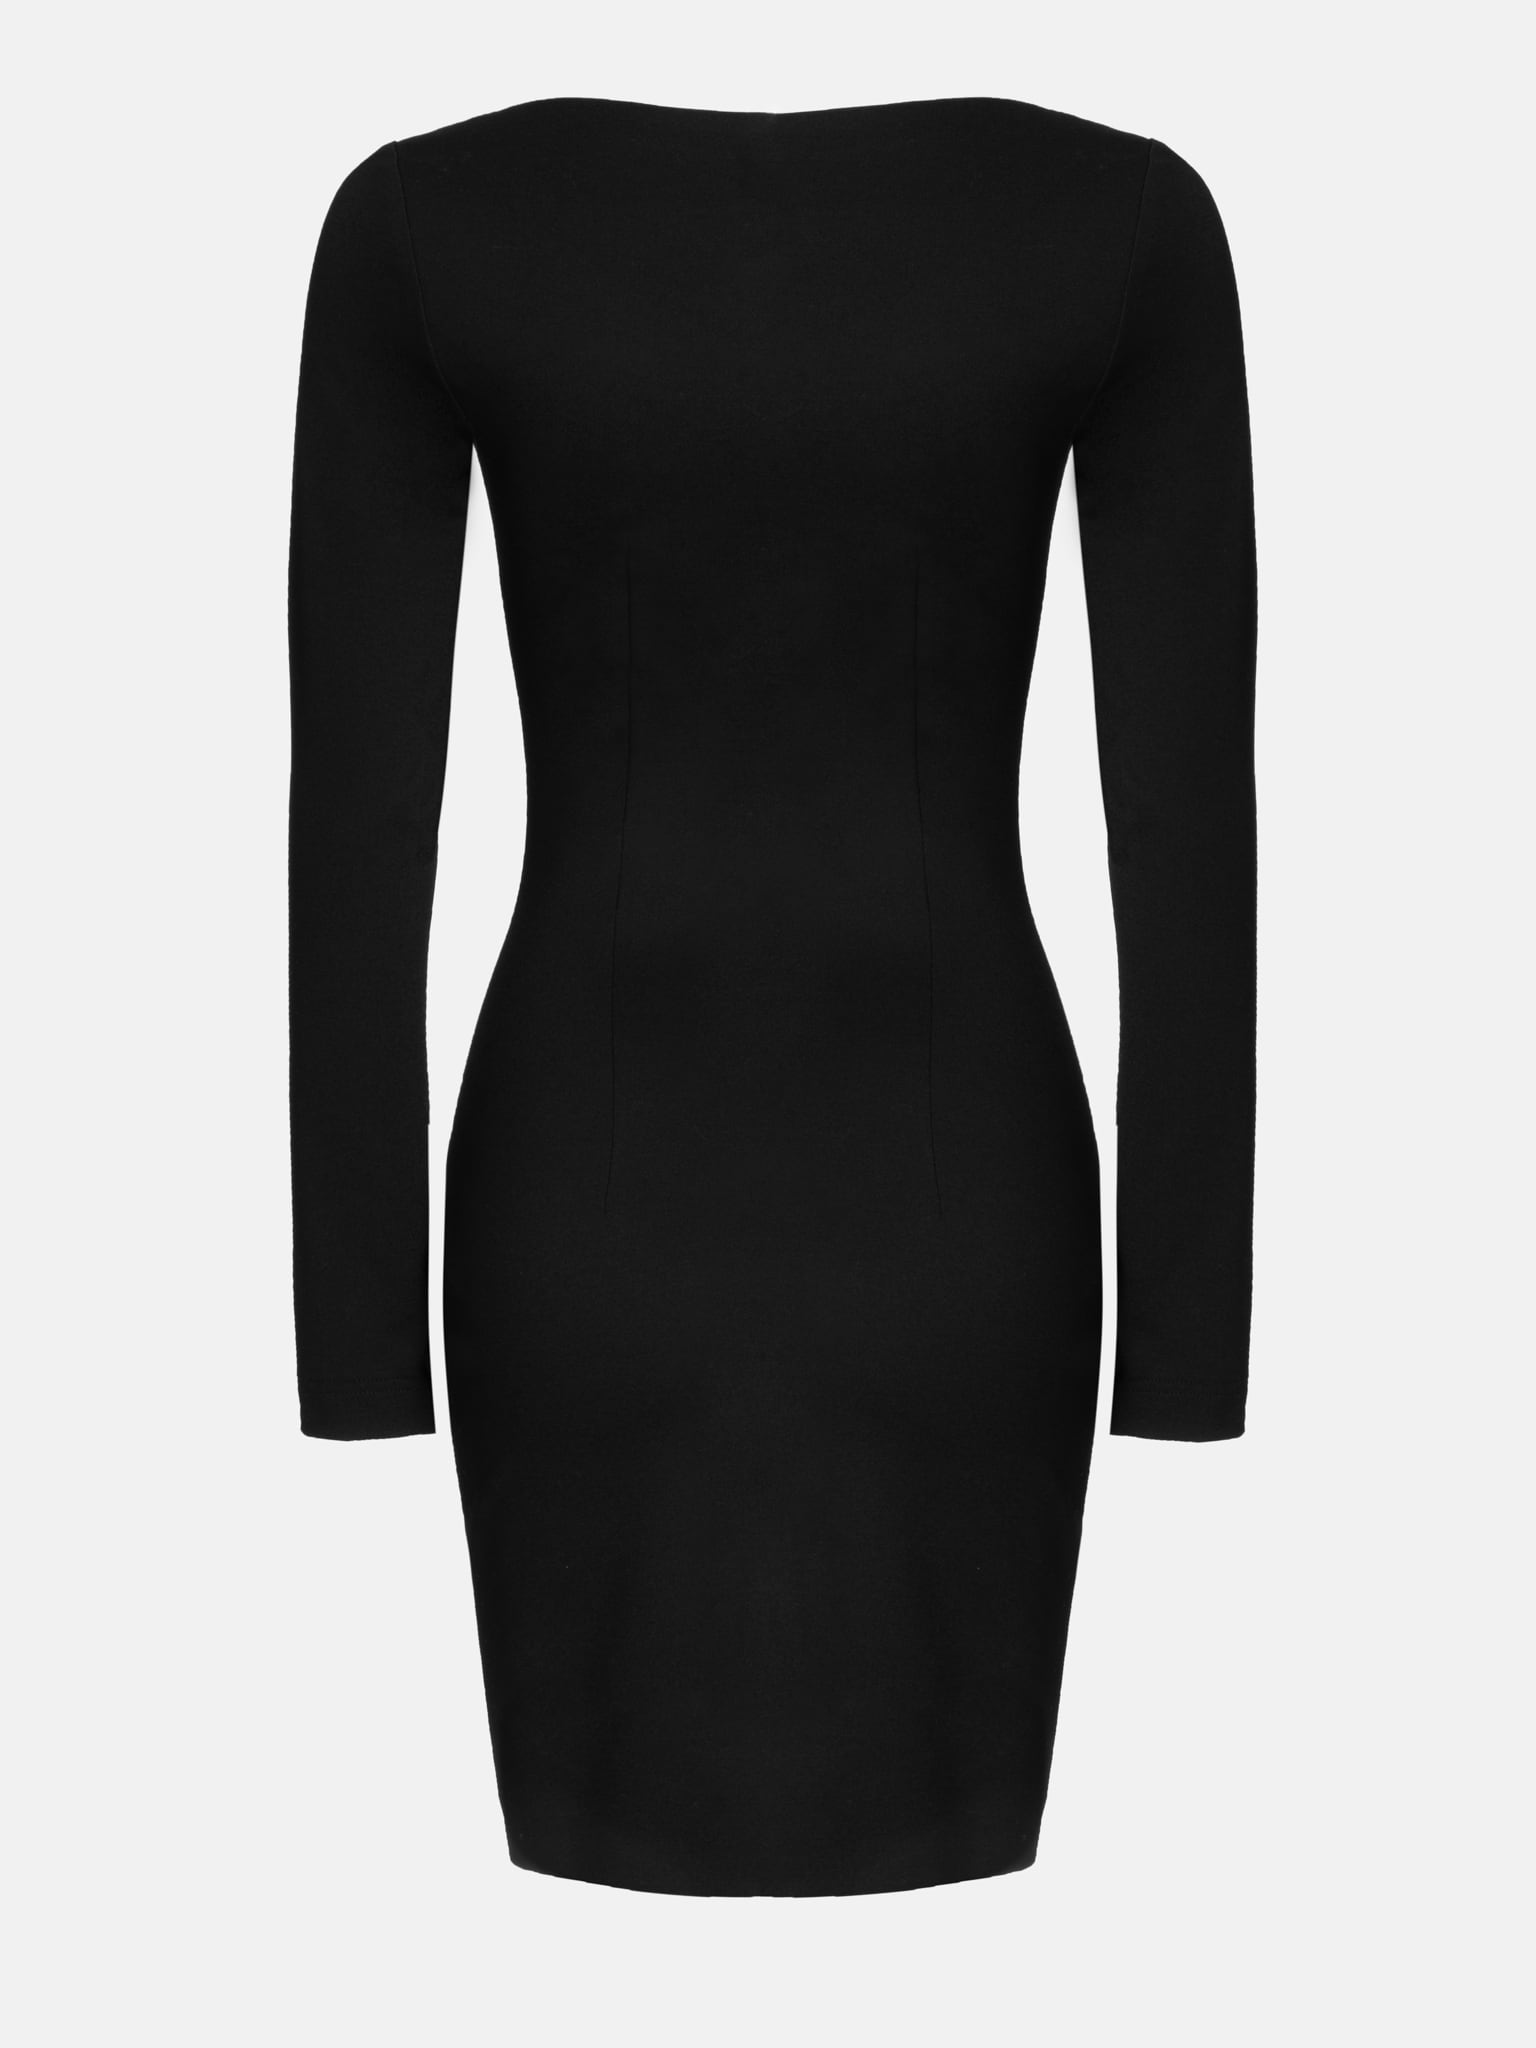 Square-neck front-slit mini dress